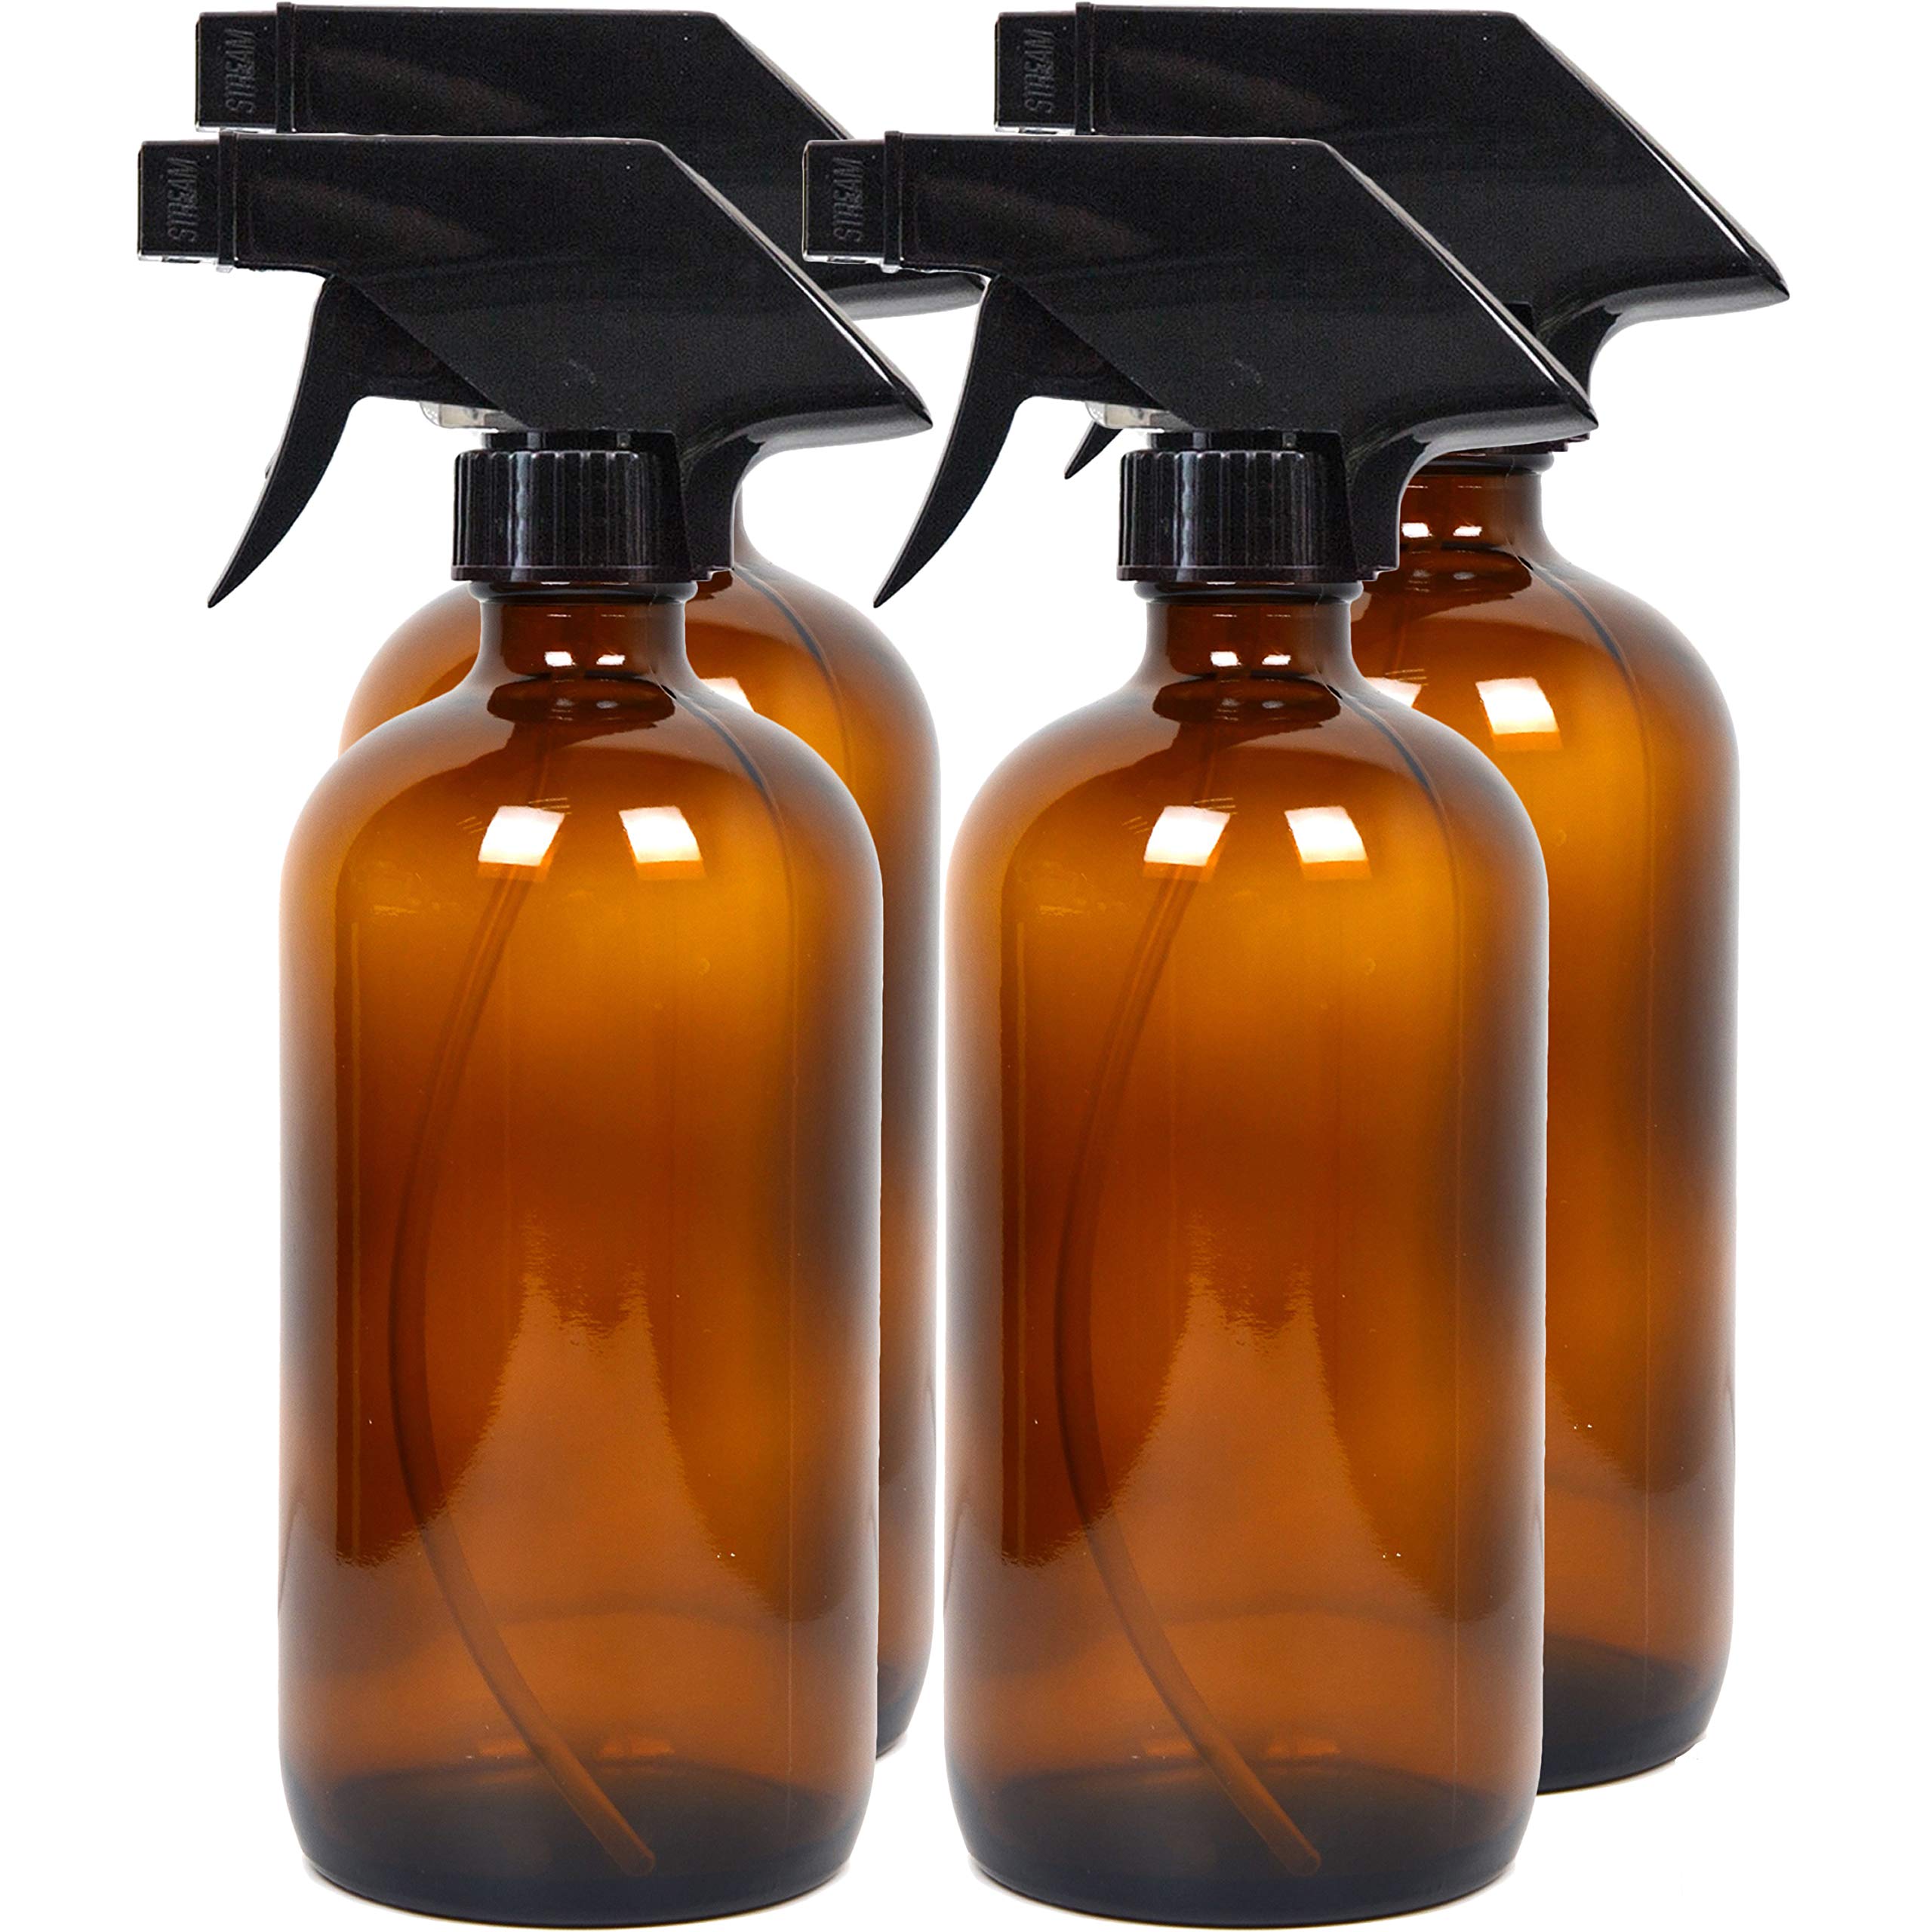 Youngever 4er Pack 500ML Leere Glassprühflasche, Nachfüllbehälter für ätherische Öle, Reinigungsmittel oder Aromatherapie (Amber)